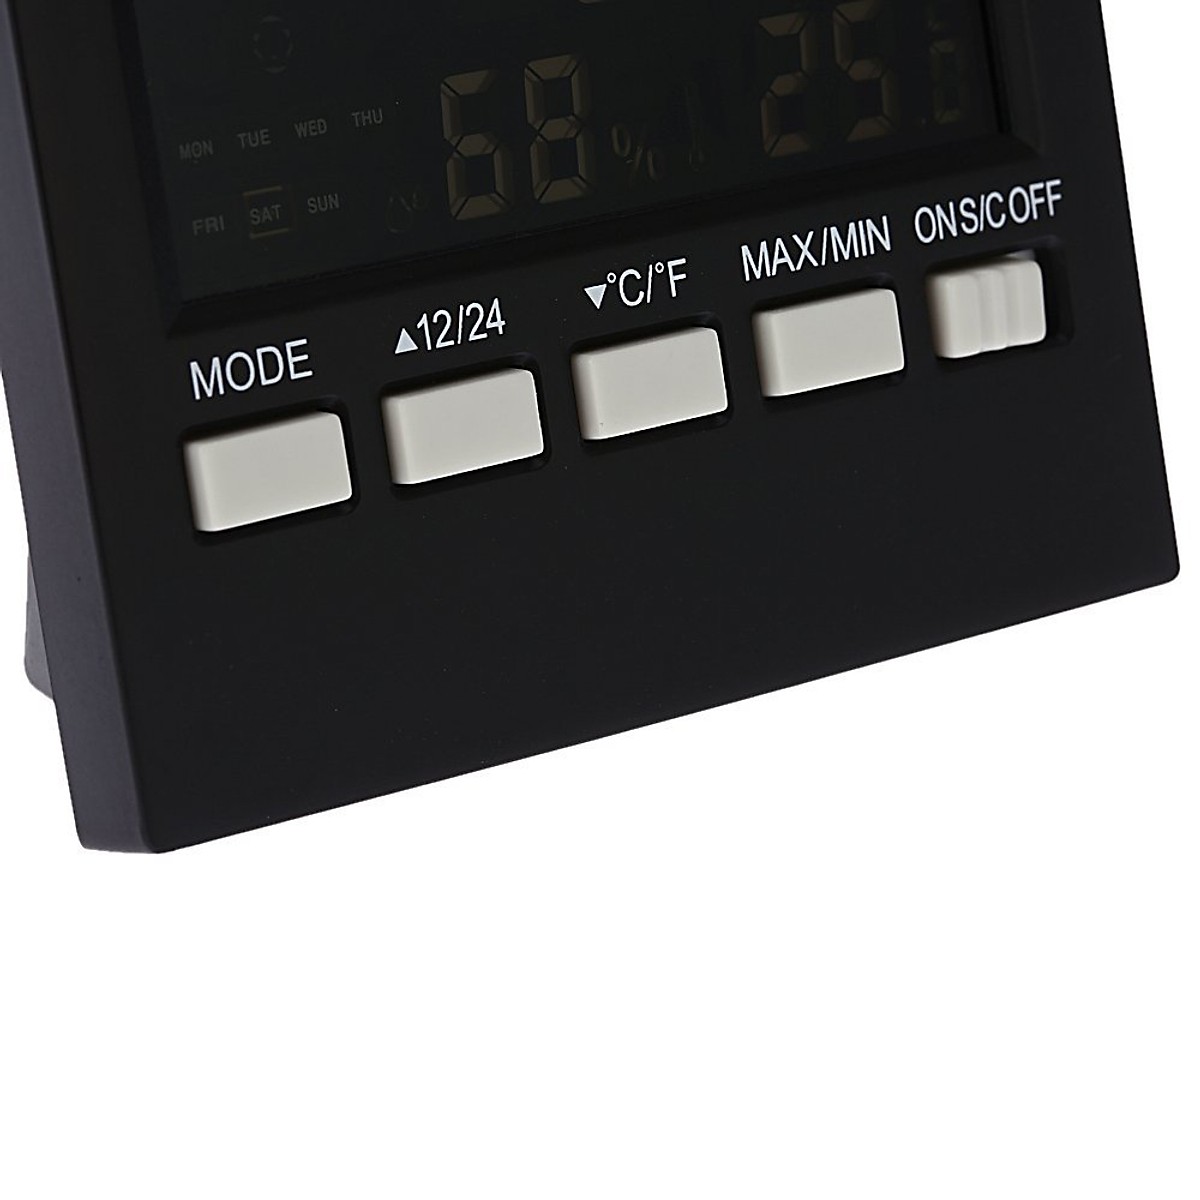 Đồng hồ để bàn đa năng màn LED đo nhiệt độ, độ ẩm, báo thức